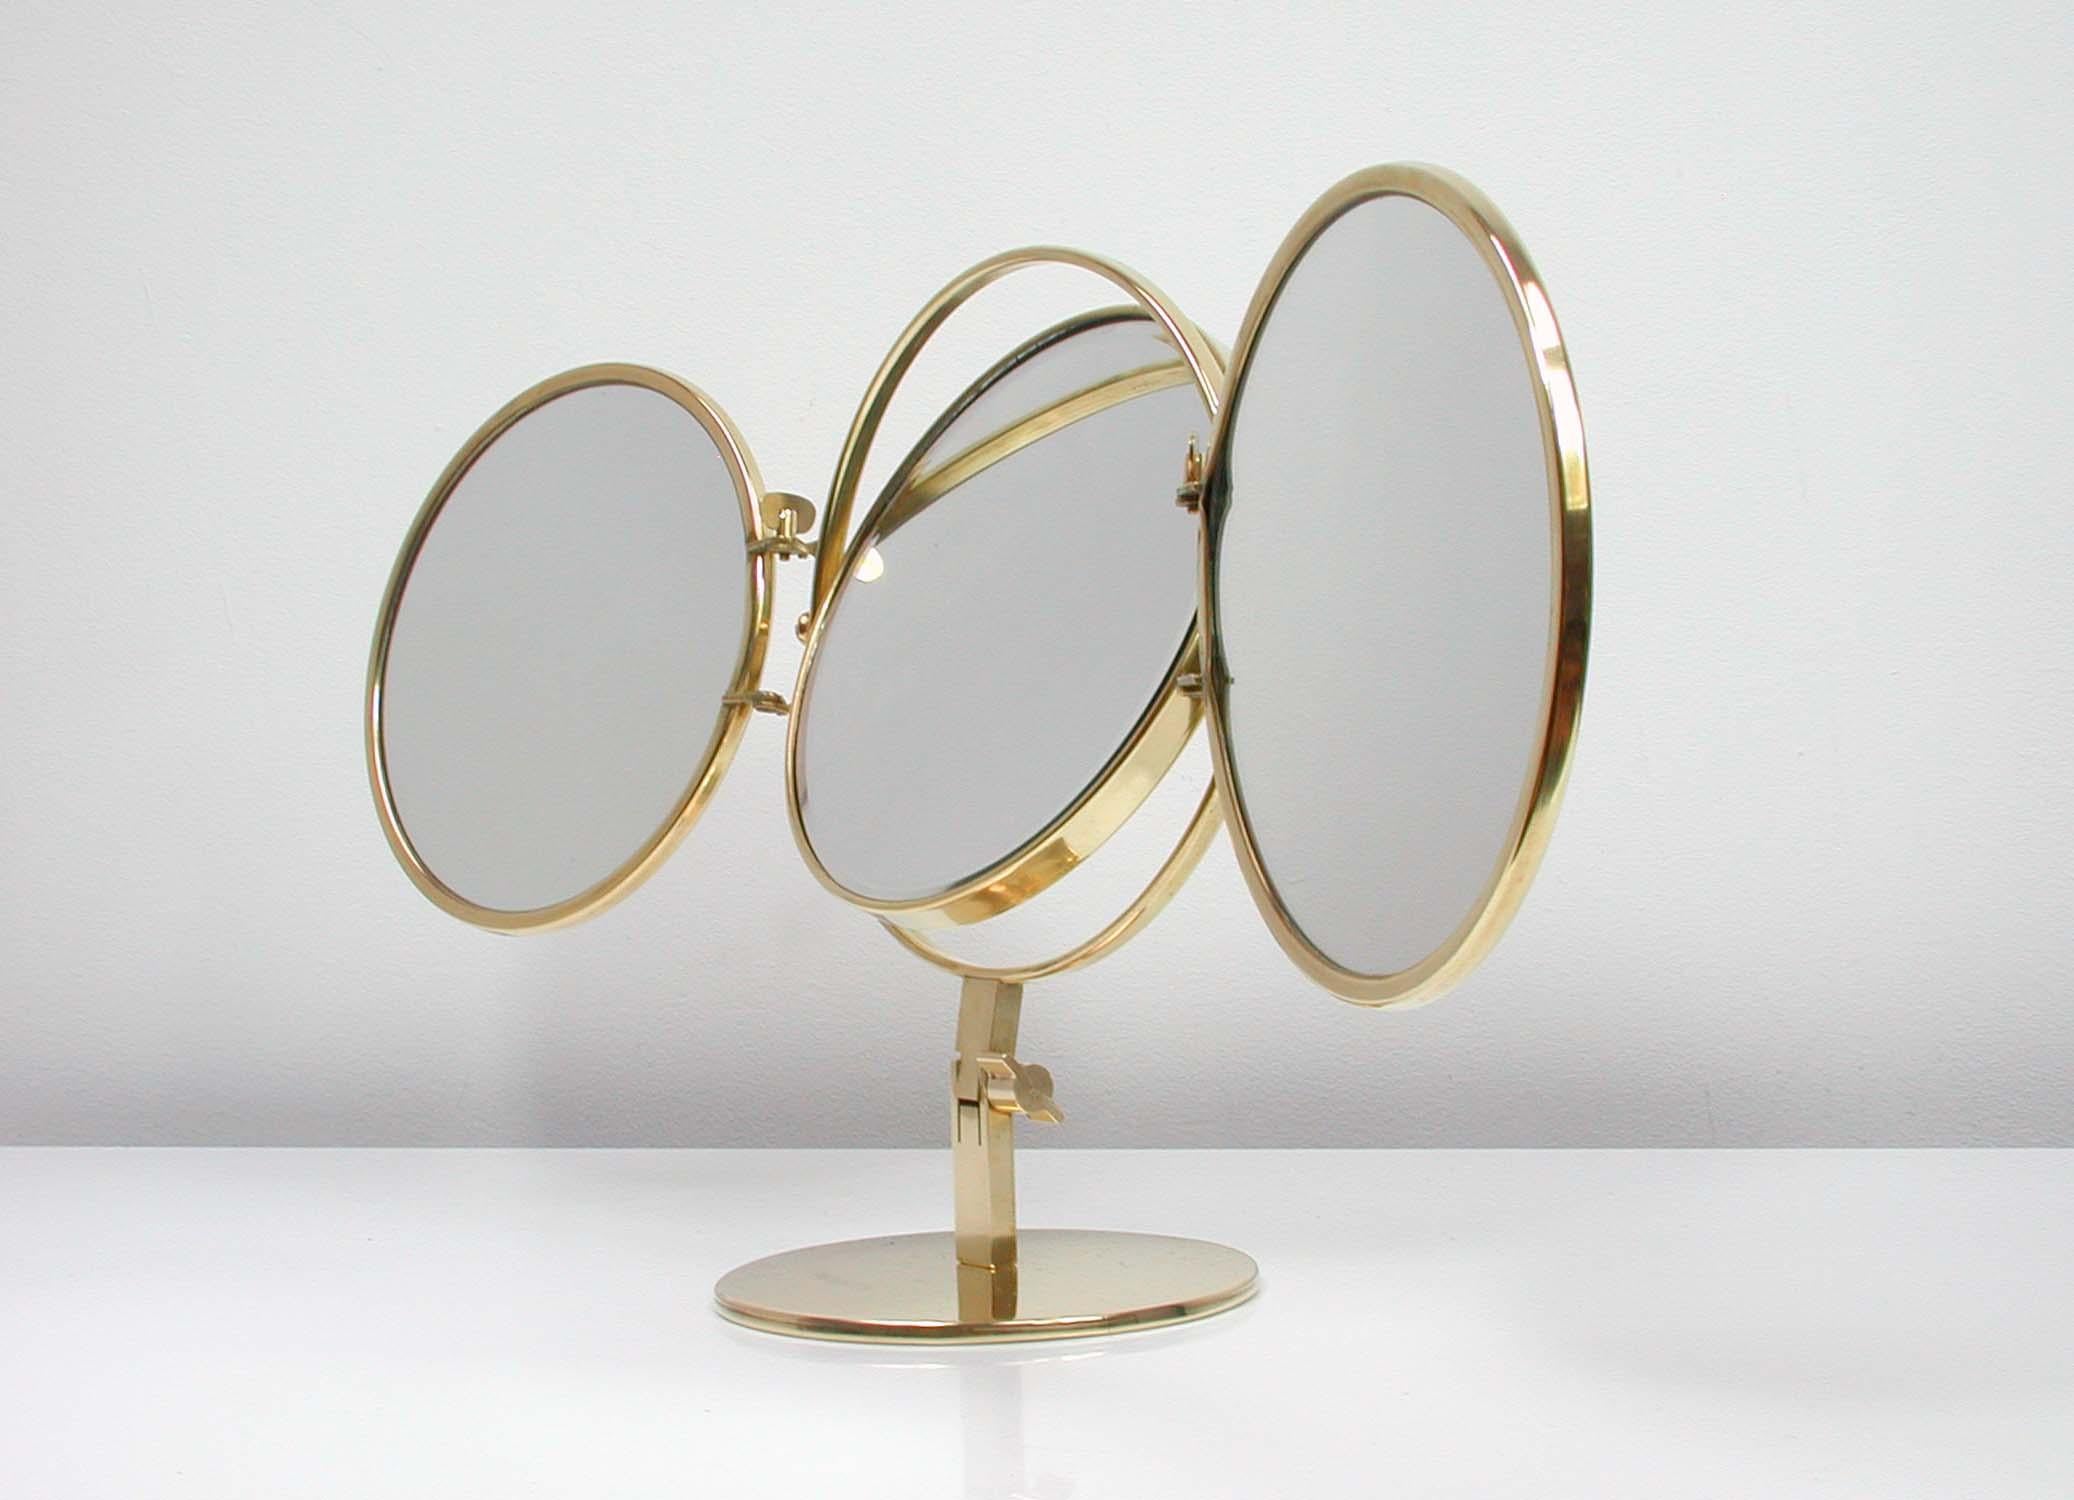 Mid-20th Century Midcentury Italian Brass Triple Folding Vanity Table Mirror, 1950s